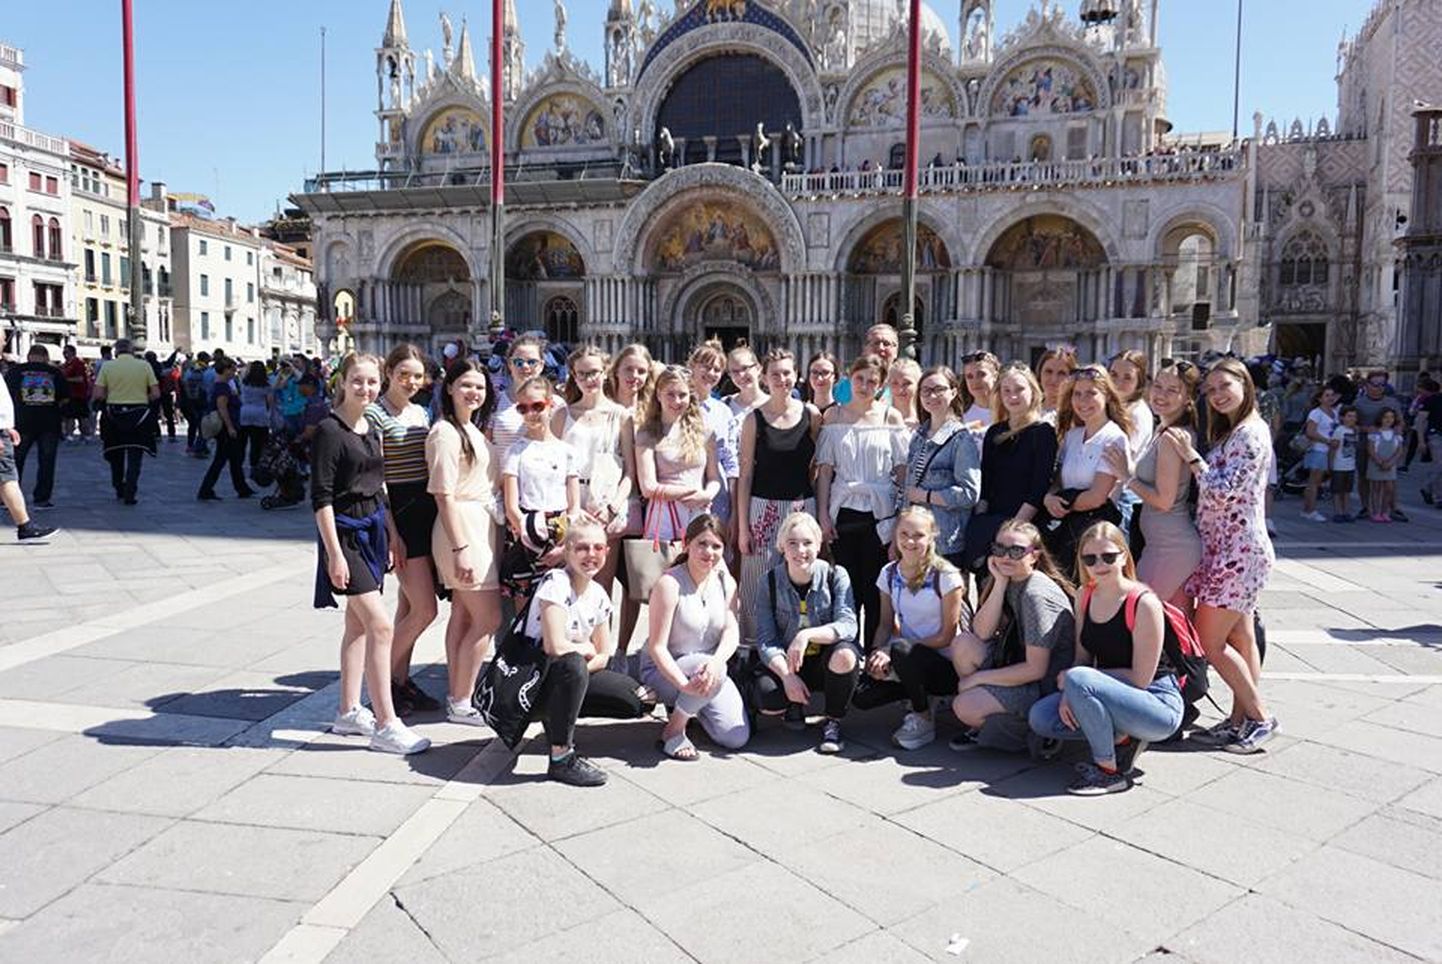 Pärnu muusikakooli neidudekoor Argentum Vox pälvis 16. rahvusvahelisel Veneetsia koorikonkurss-festivalil "Venezia in Musica" kategooria kulddiplomi ja oma kategooria võitjatiitli.